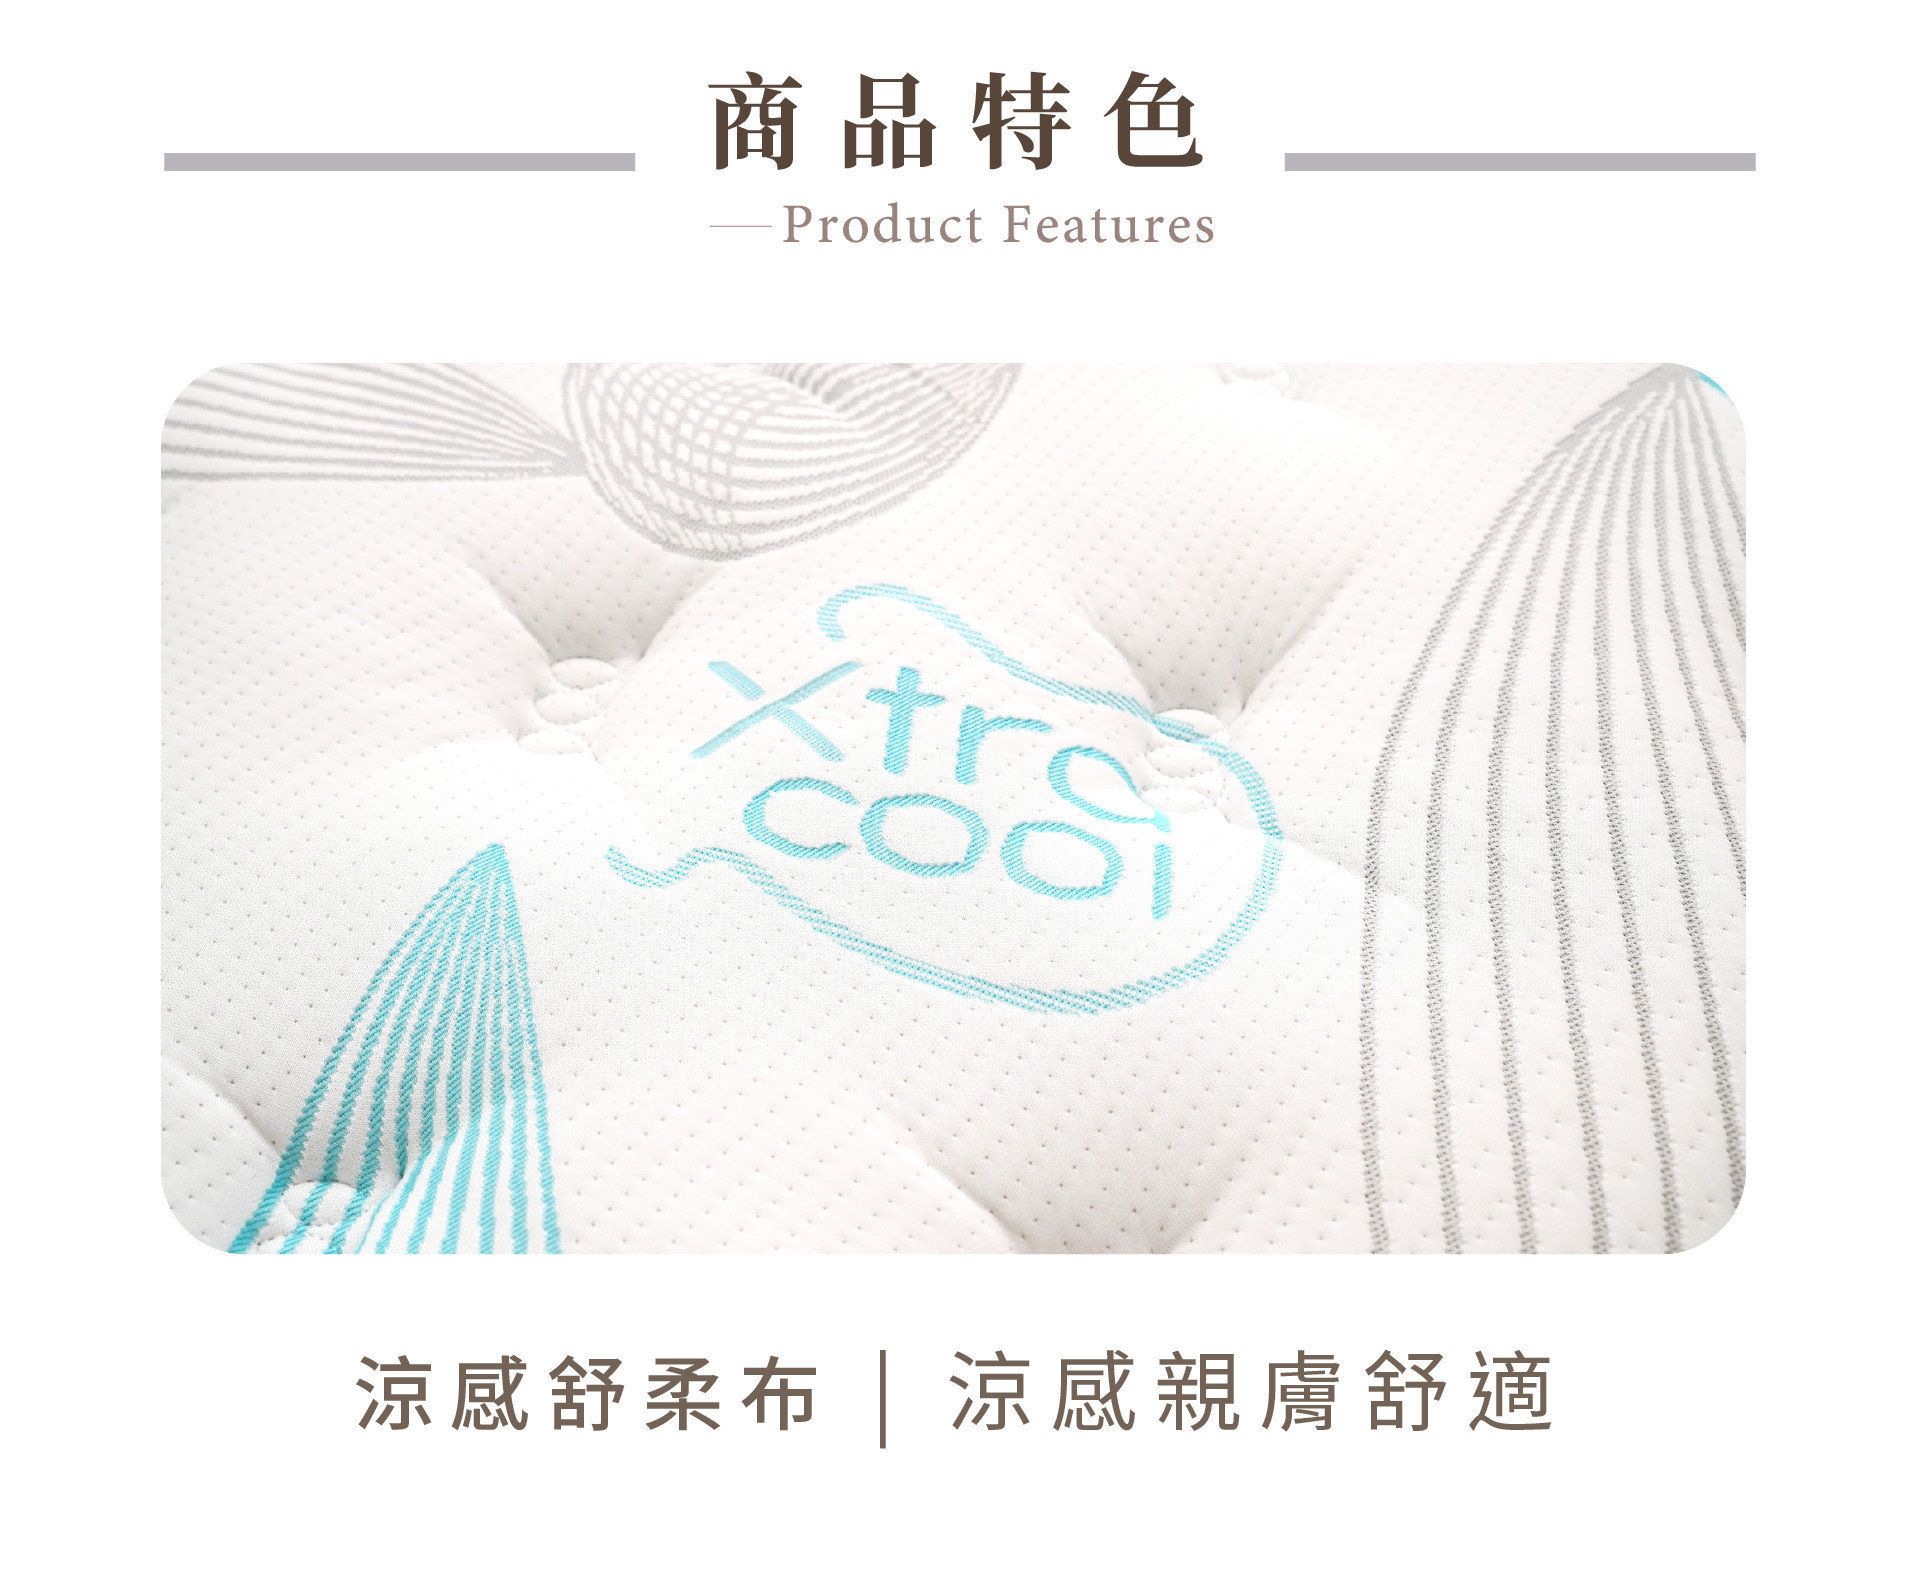 艾斯床墊表布採具有高效率散熱 Xtra cool艾絲酷技術，睡起來更舒適、不悶熱。